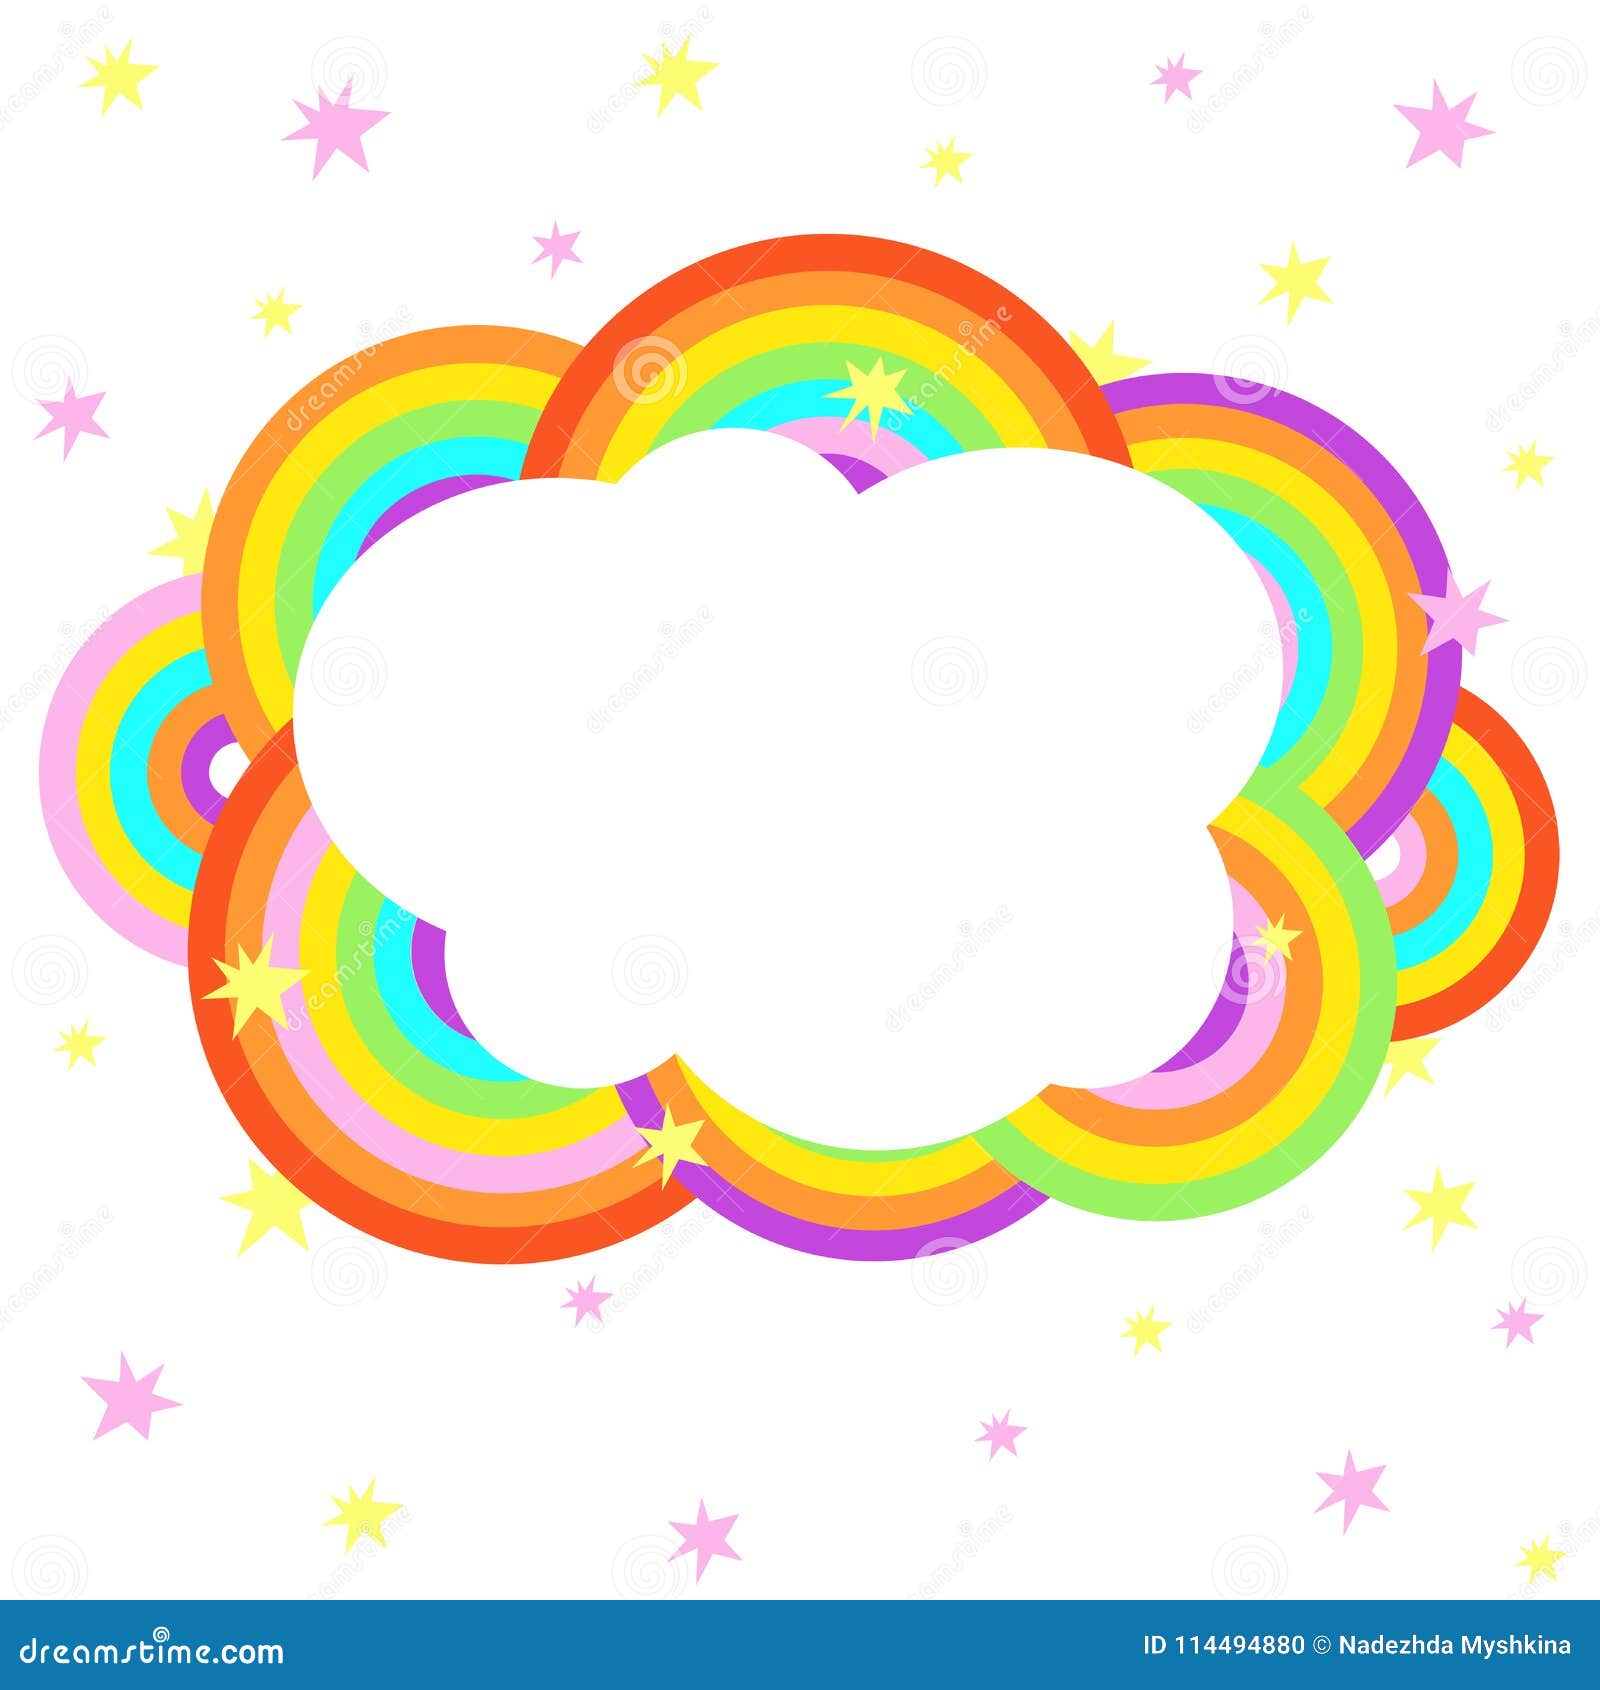 Cartoon Cloud Rainbow Stock Illustrations – 22,587 Cartoon Cloud Rainbow  Stock Illustrations, Vectors & Clipart - Dreamstime